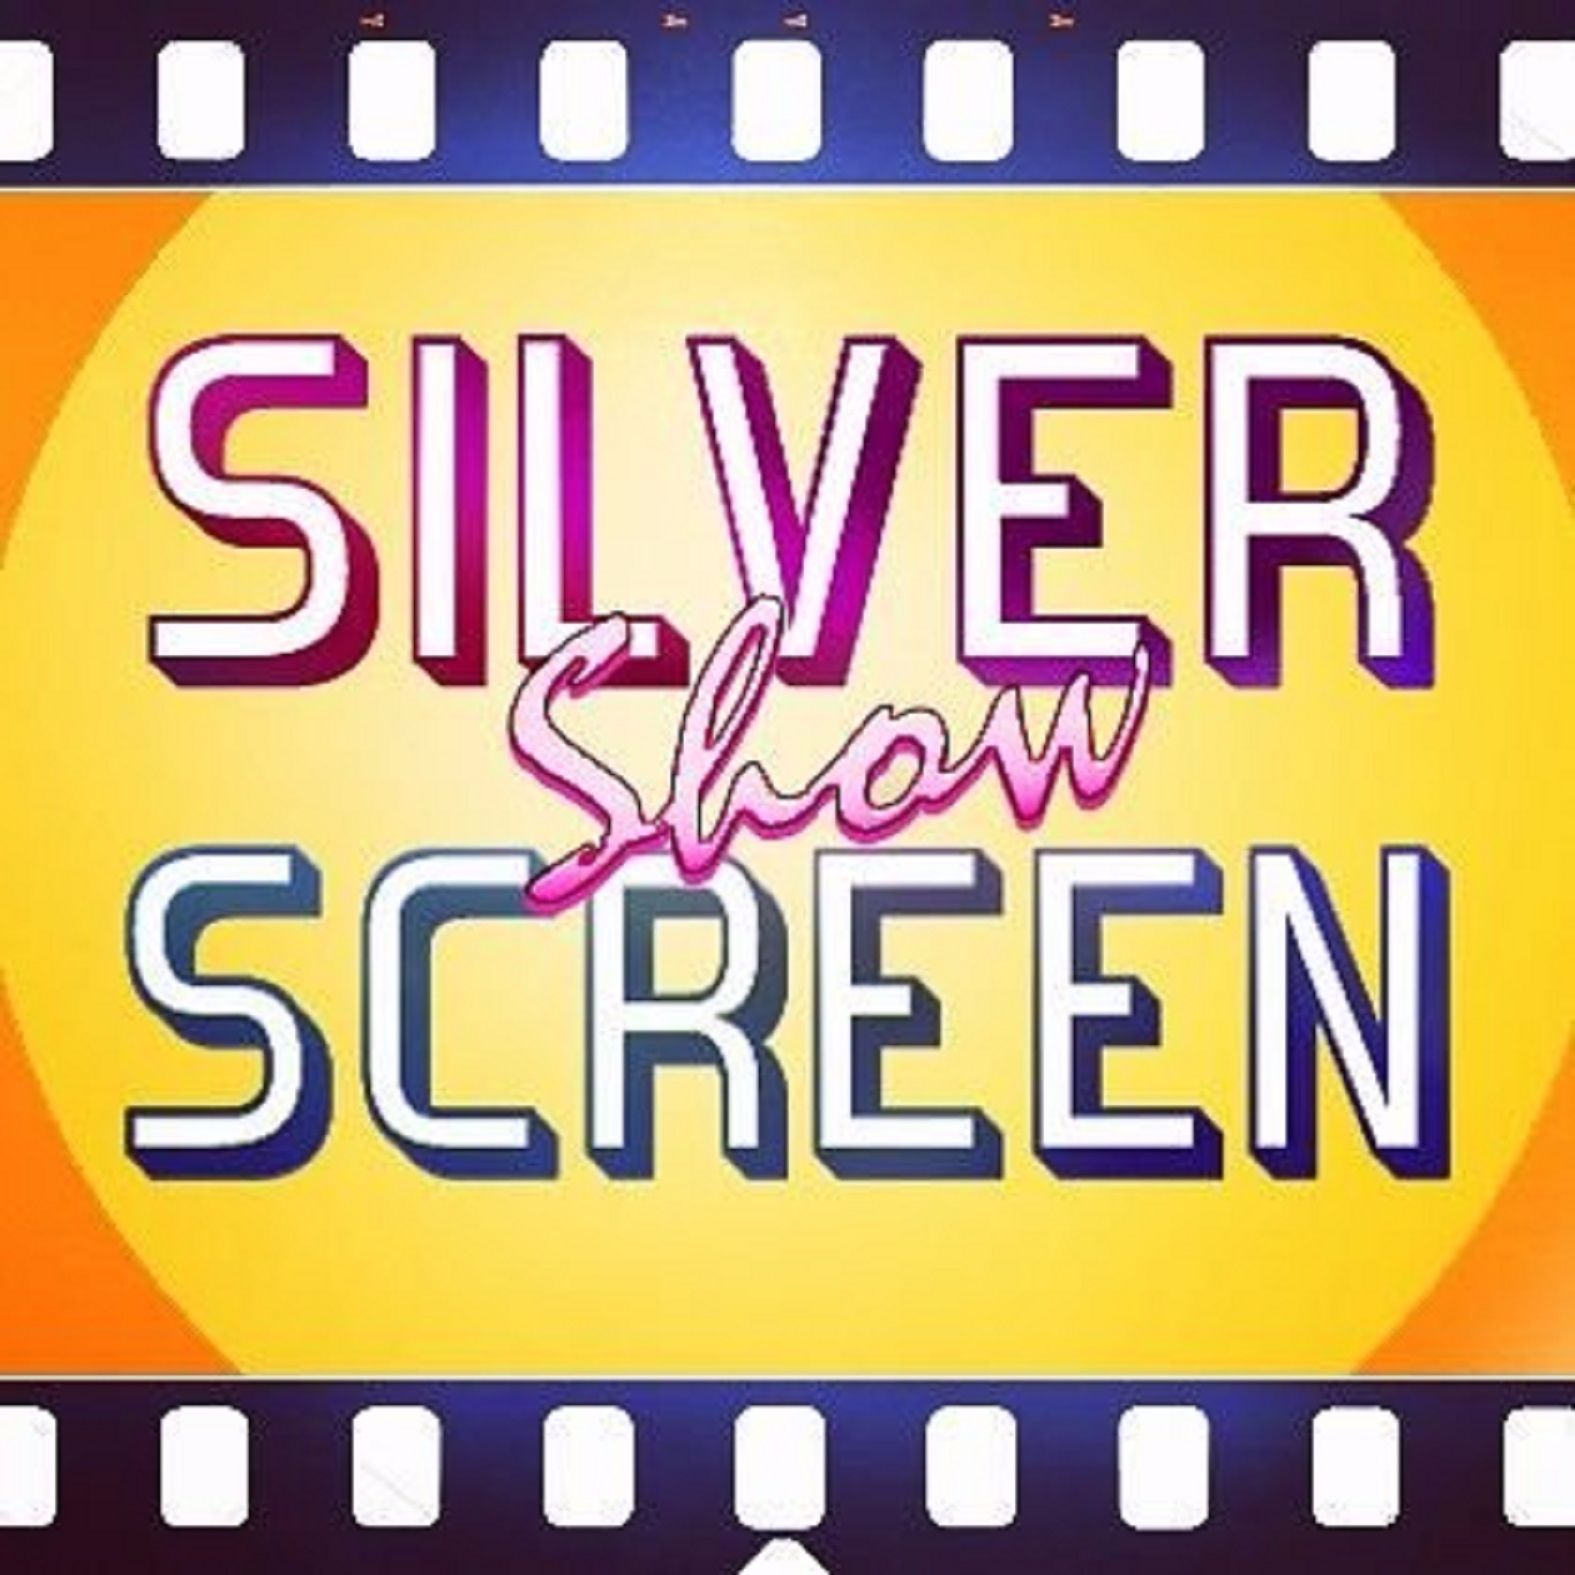 Silver Screen Show / Episode 16